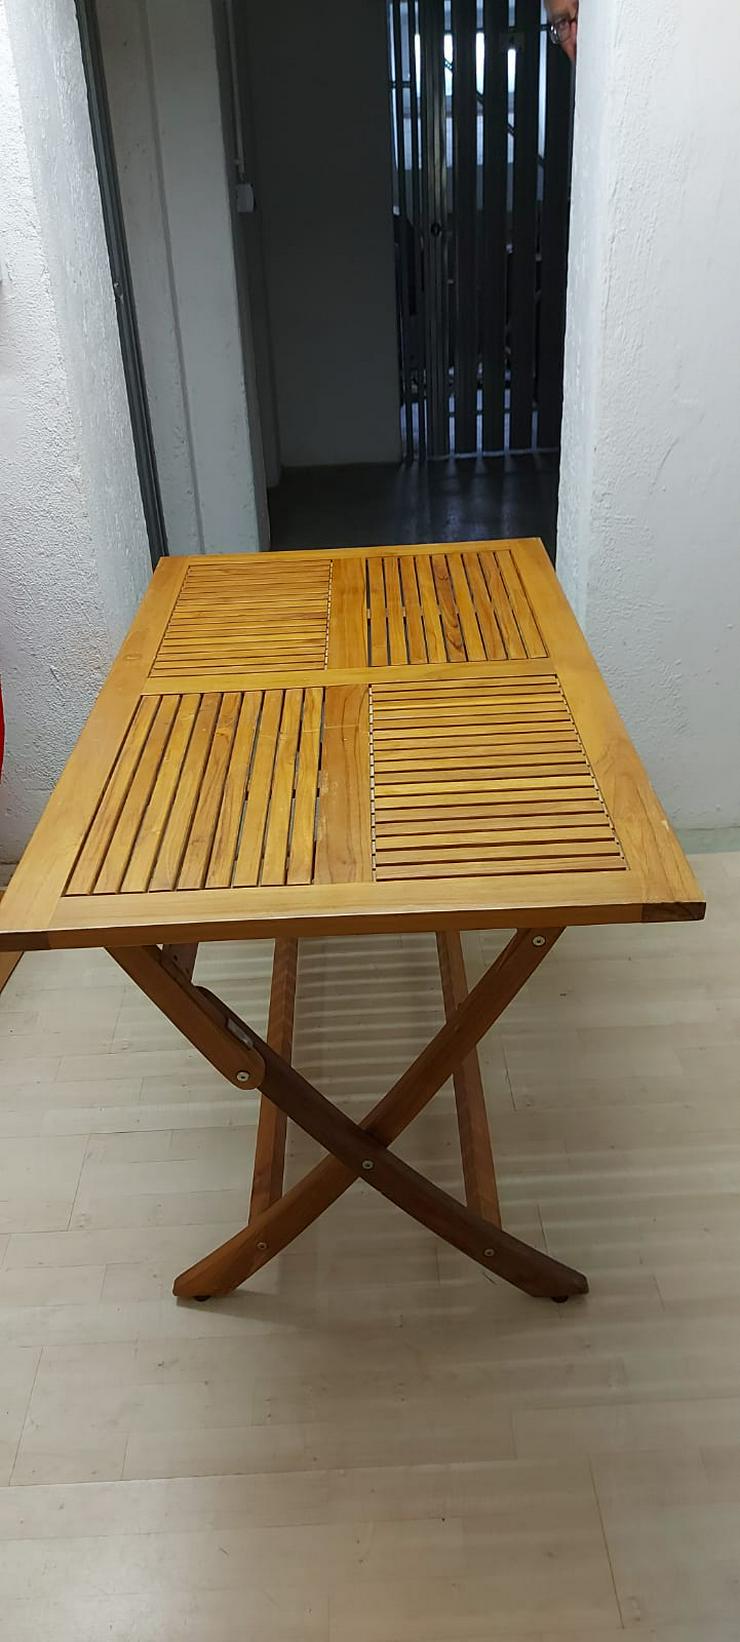 schöne Holztisch, 120x70 - Tische - Bild 1